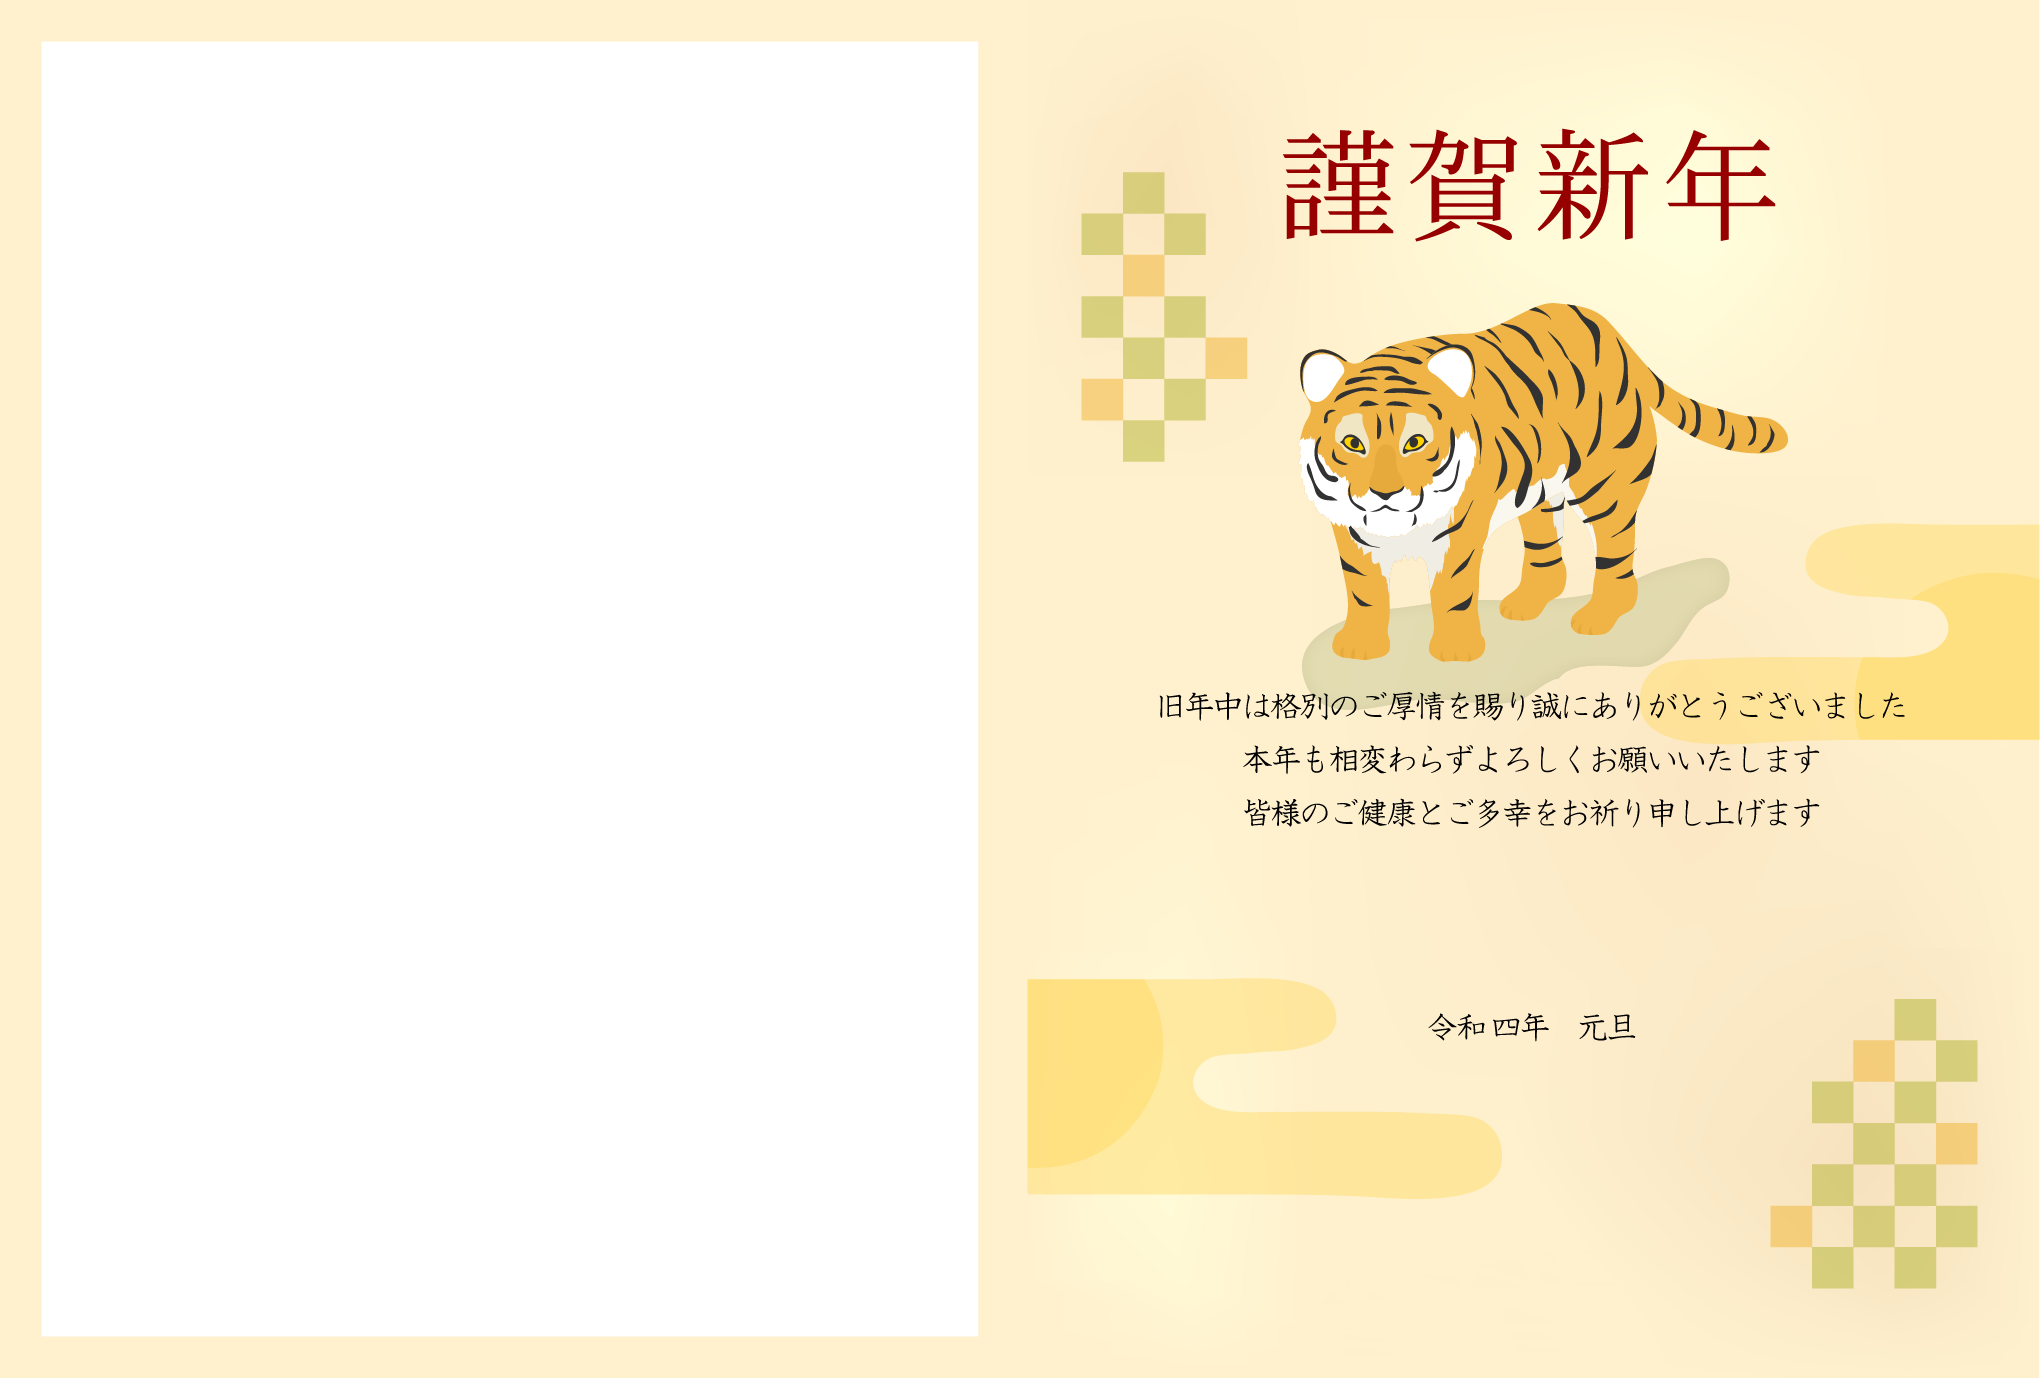 かわいい虎とサークル状の梅の年賀状テンプレート 22年 令和4年 無料の年賀状デザインテンプレート集